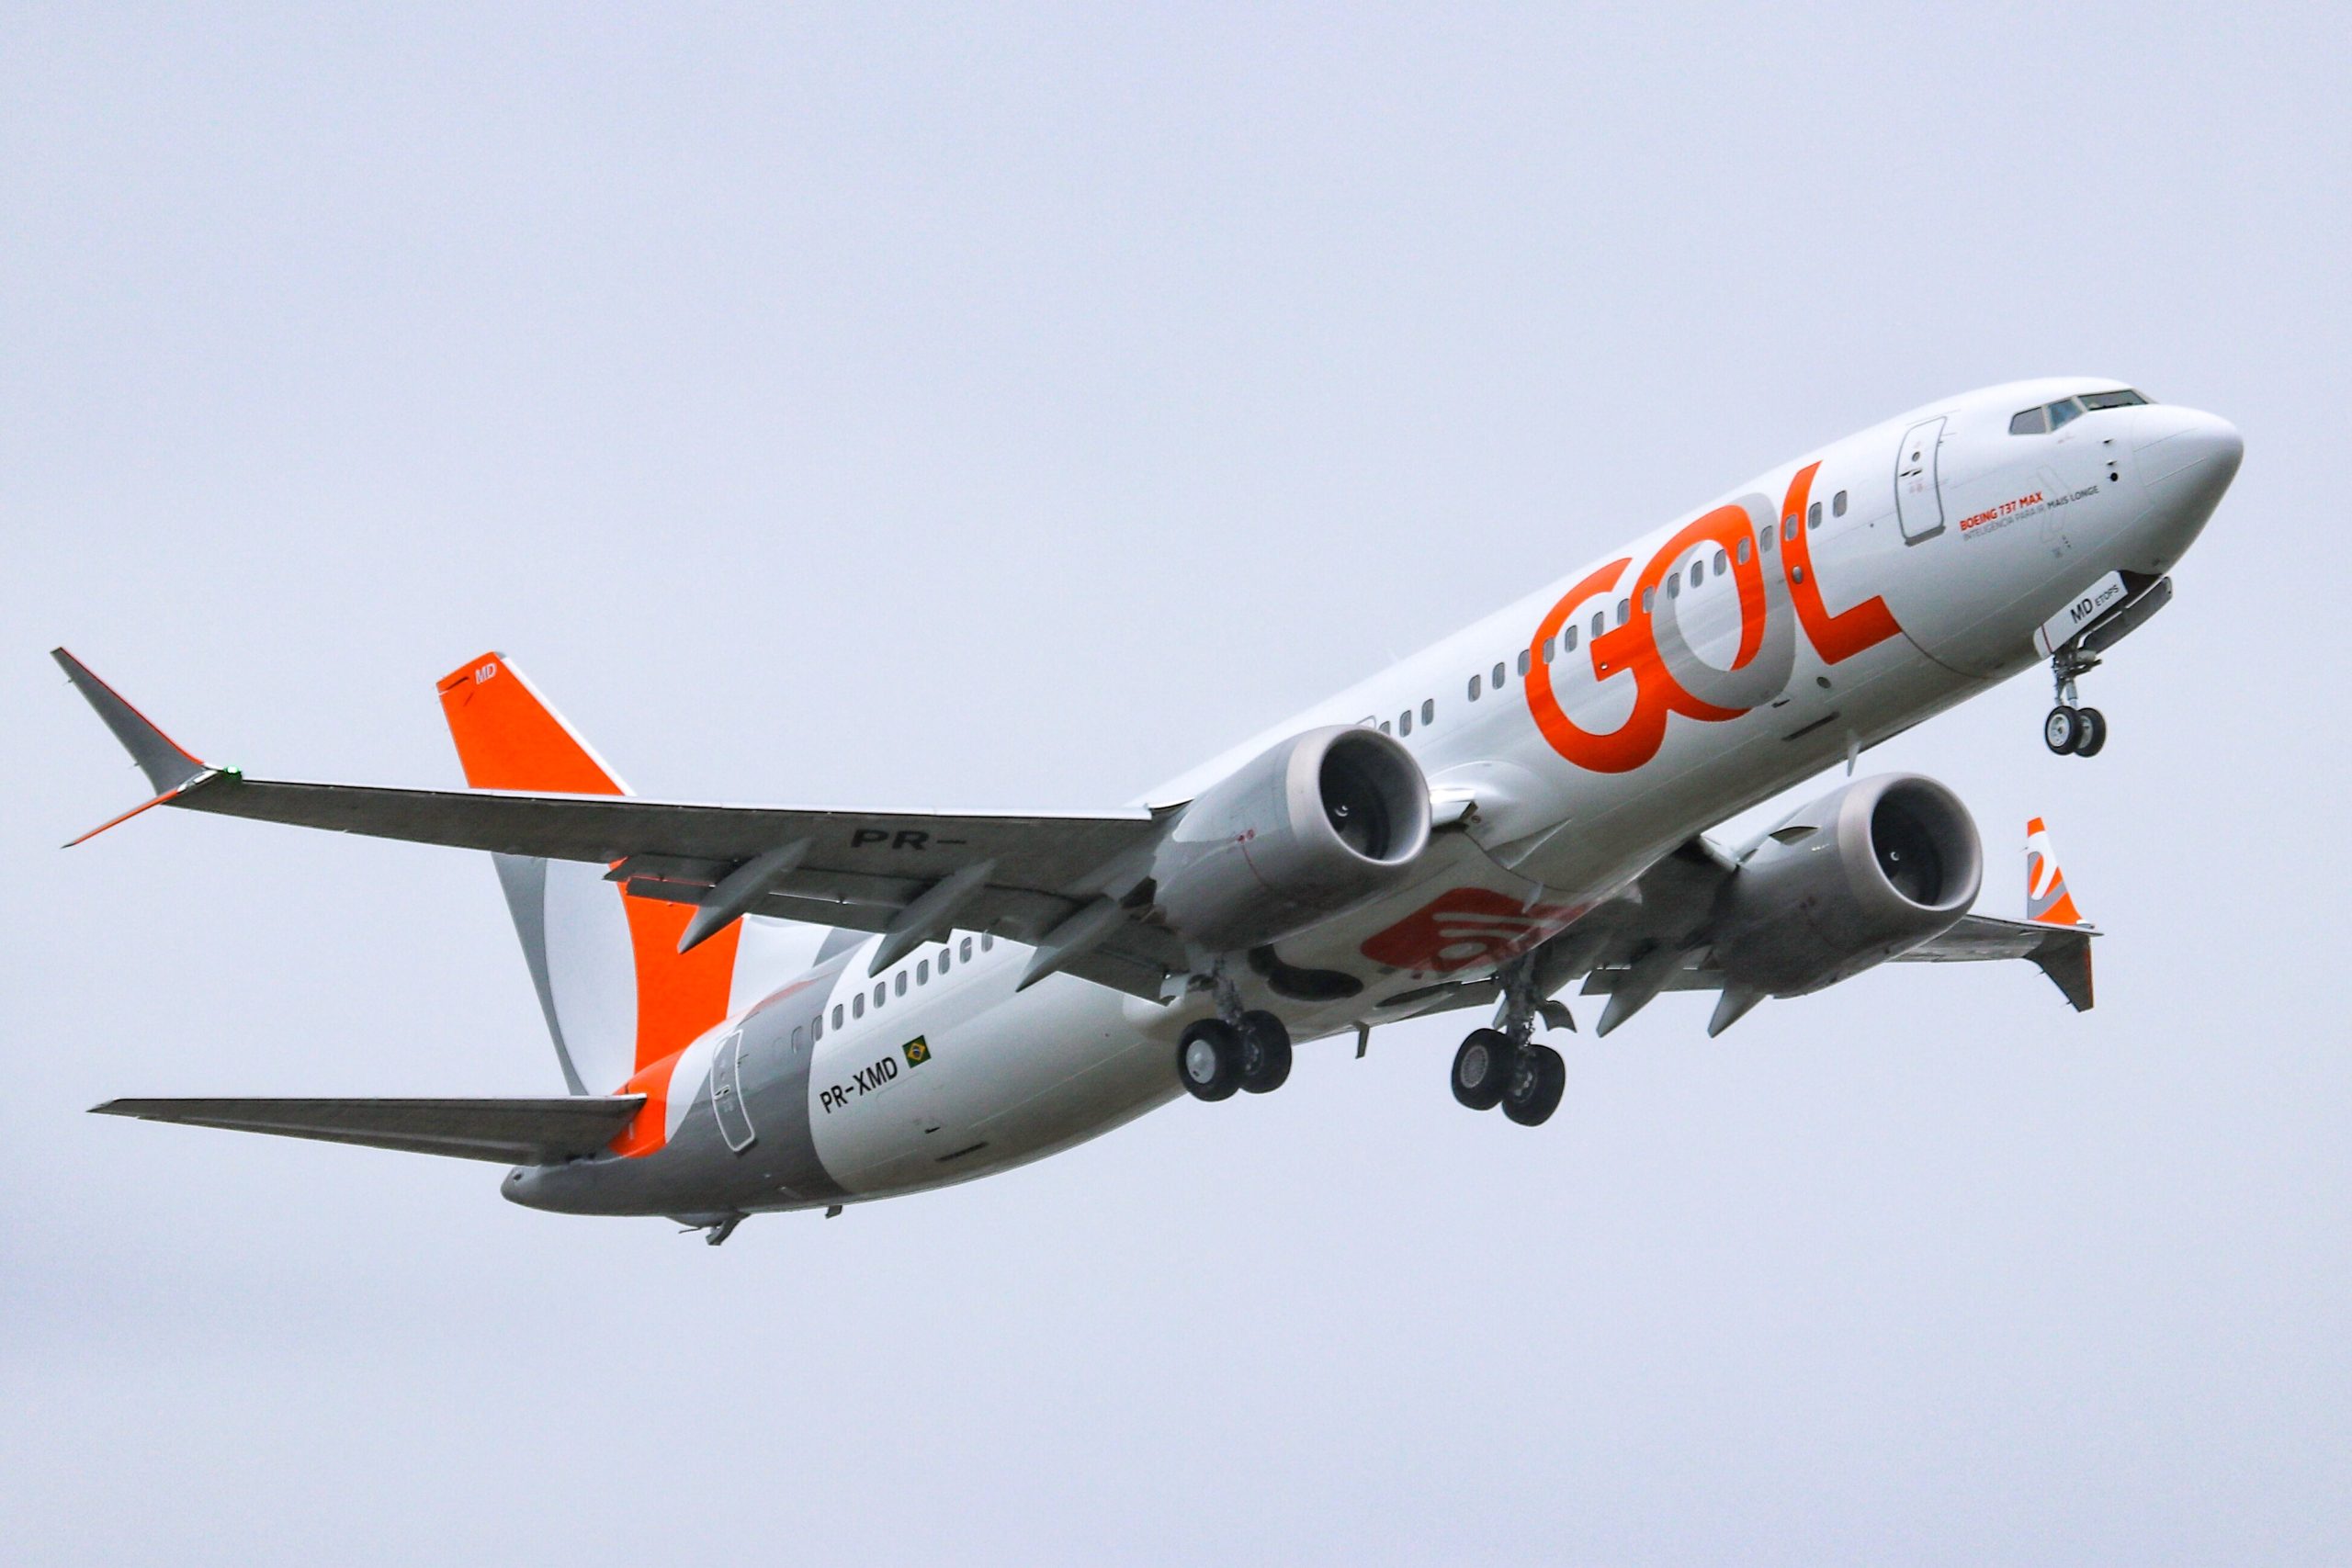 Gol é a primeira linha aérea do mundo a retomar operações com o 737 MAX -  Agência Transporta Brasil